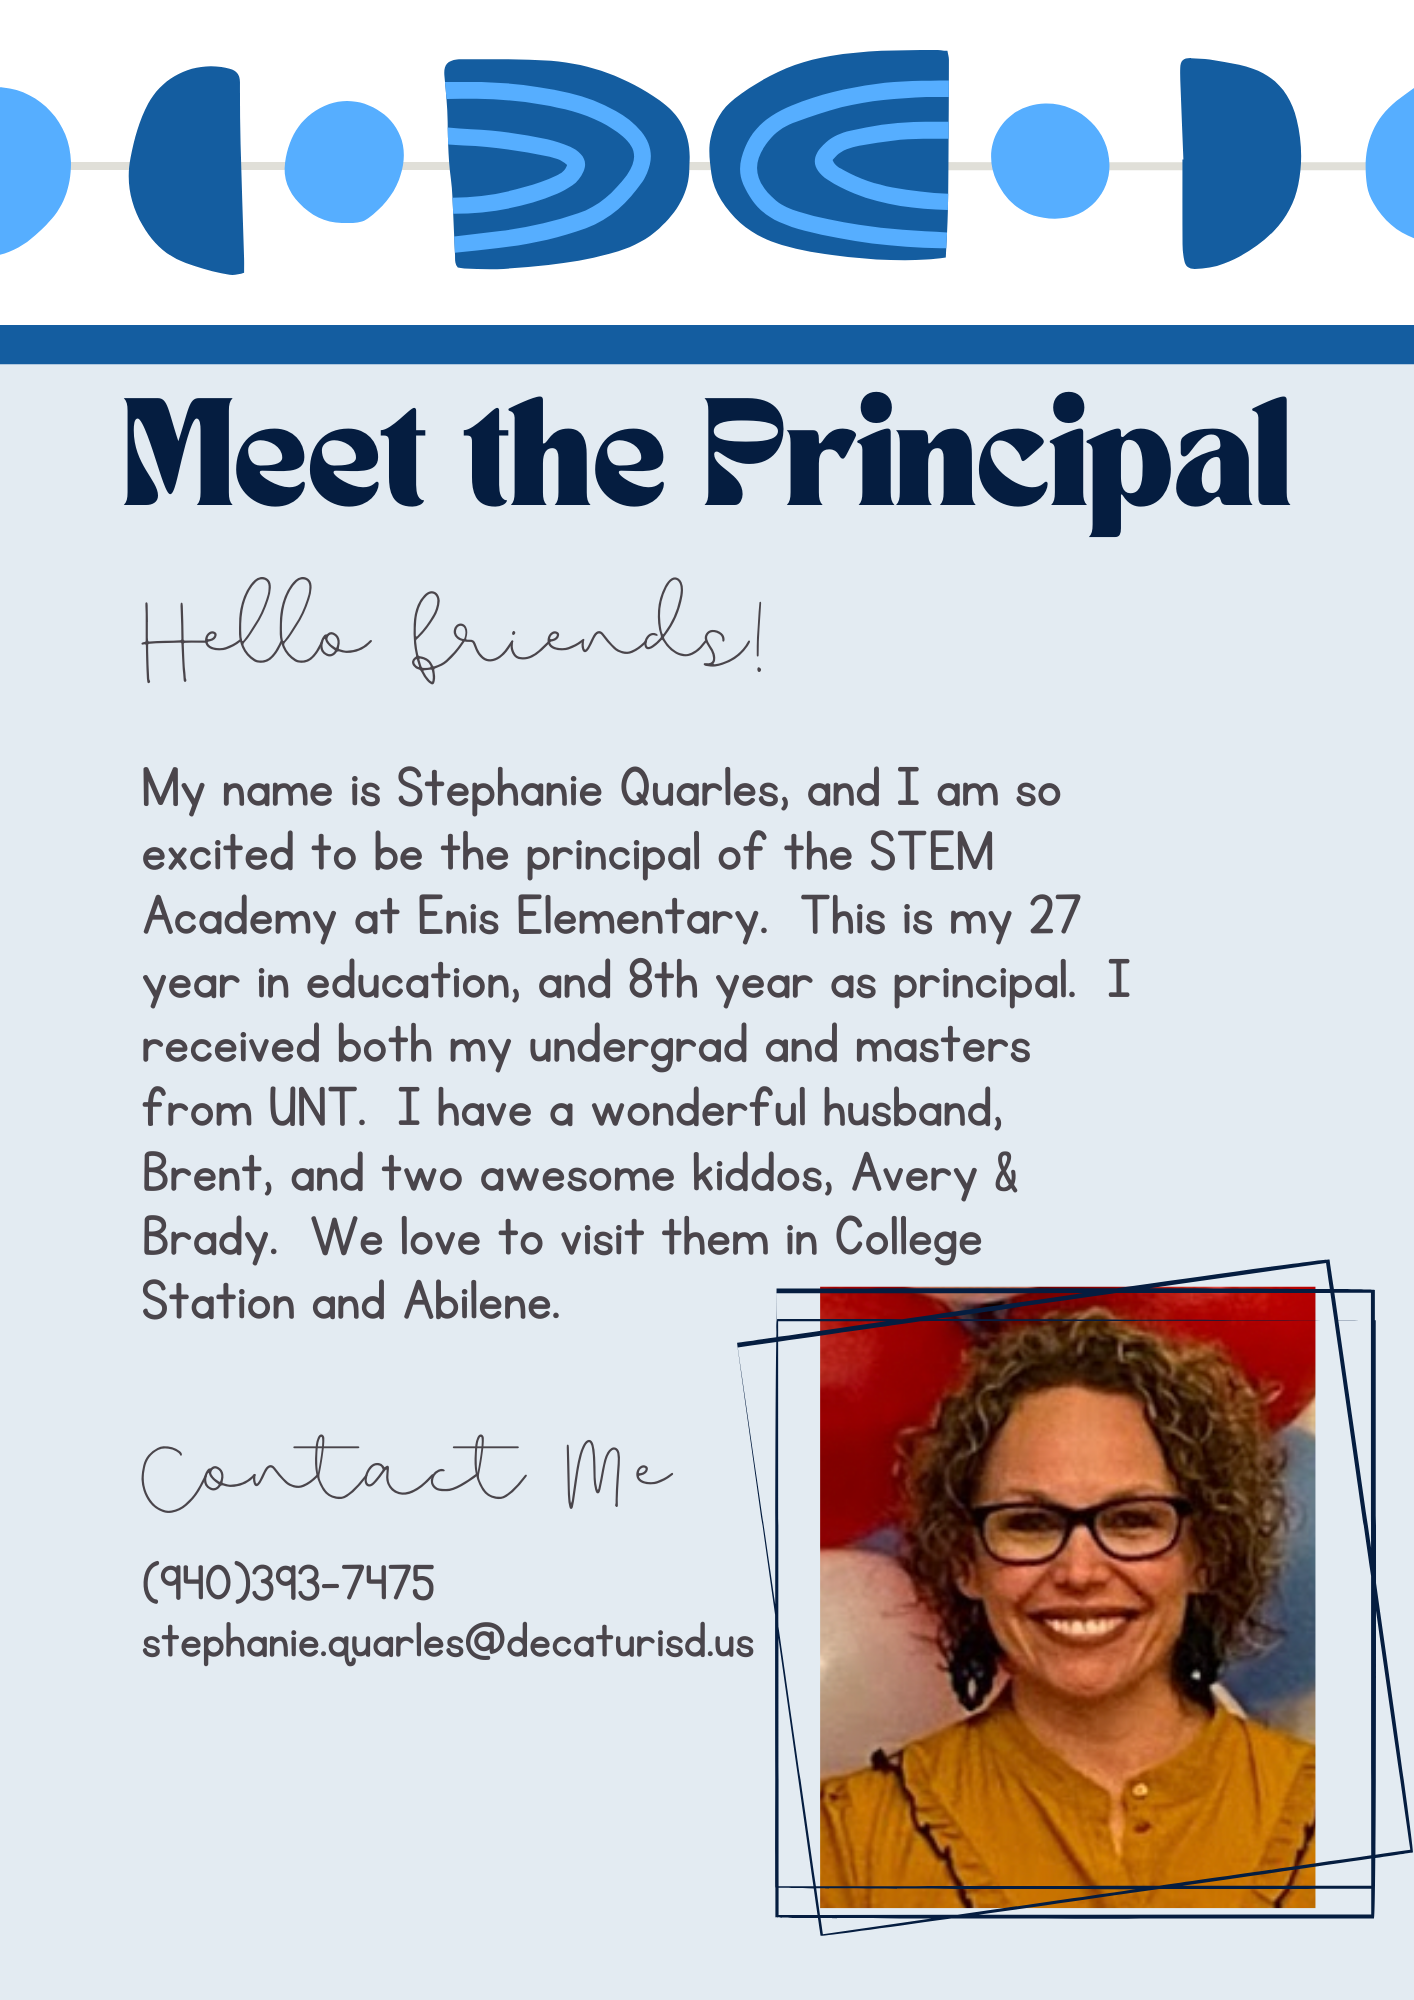 Meet the Principal